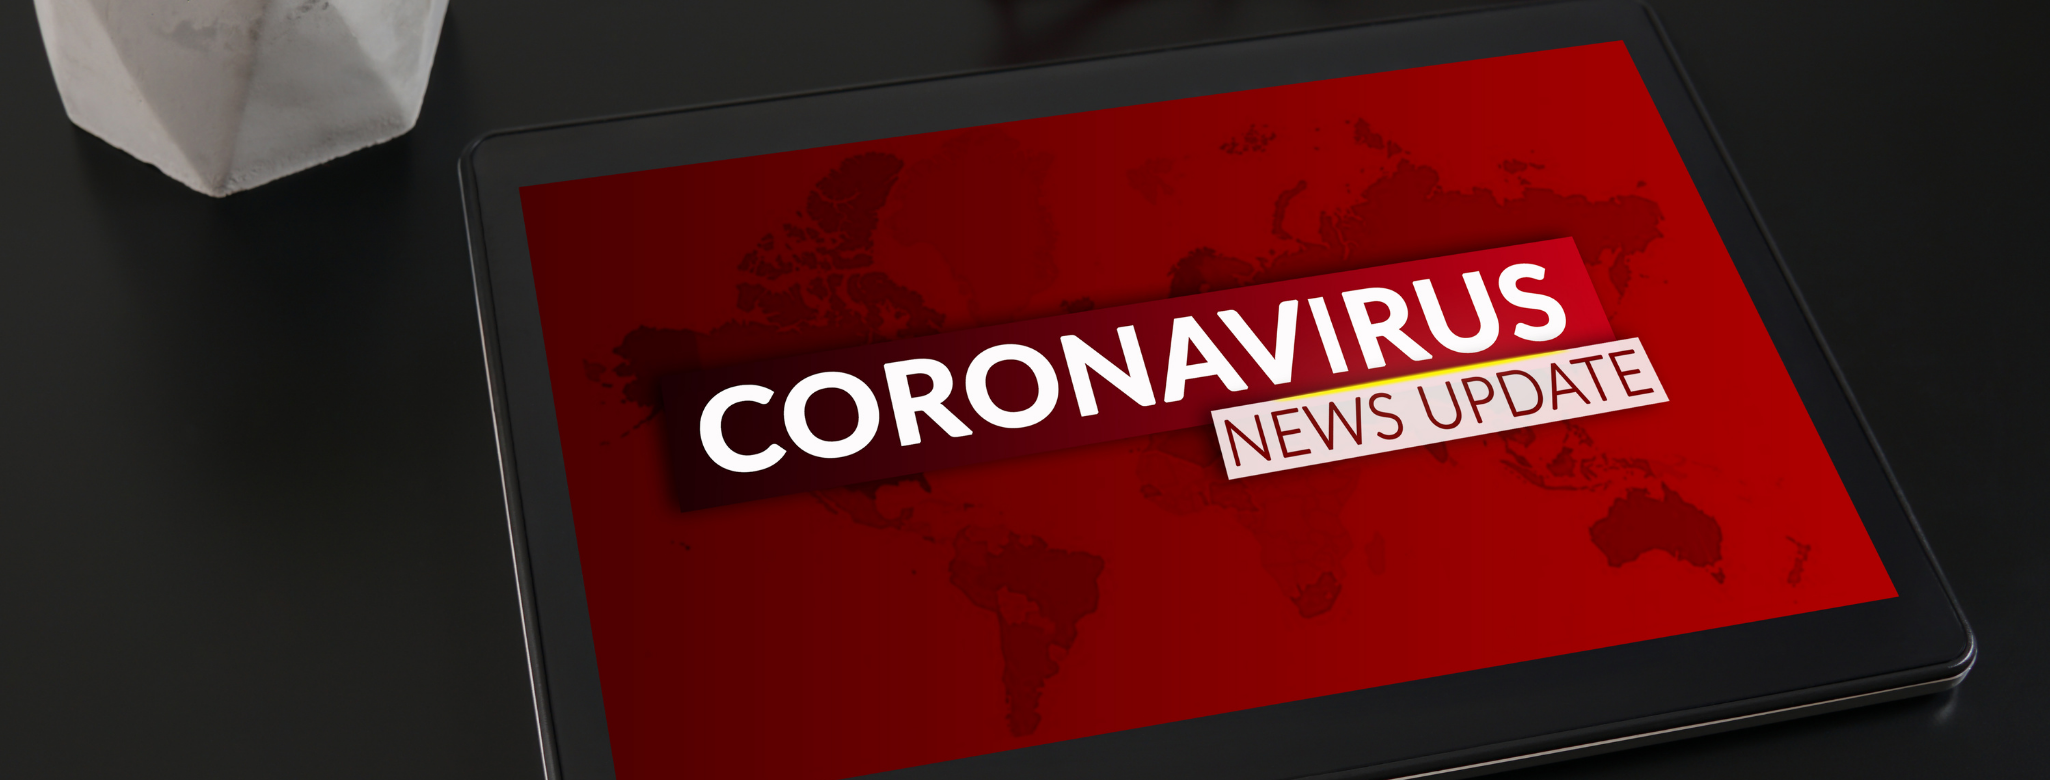 Coronavirus information hub